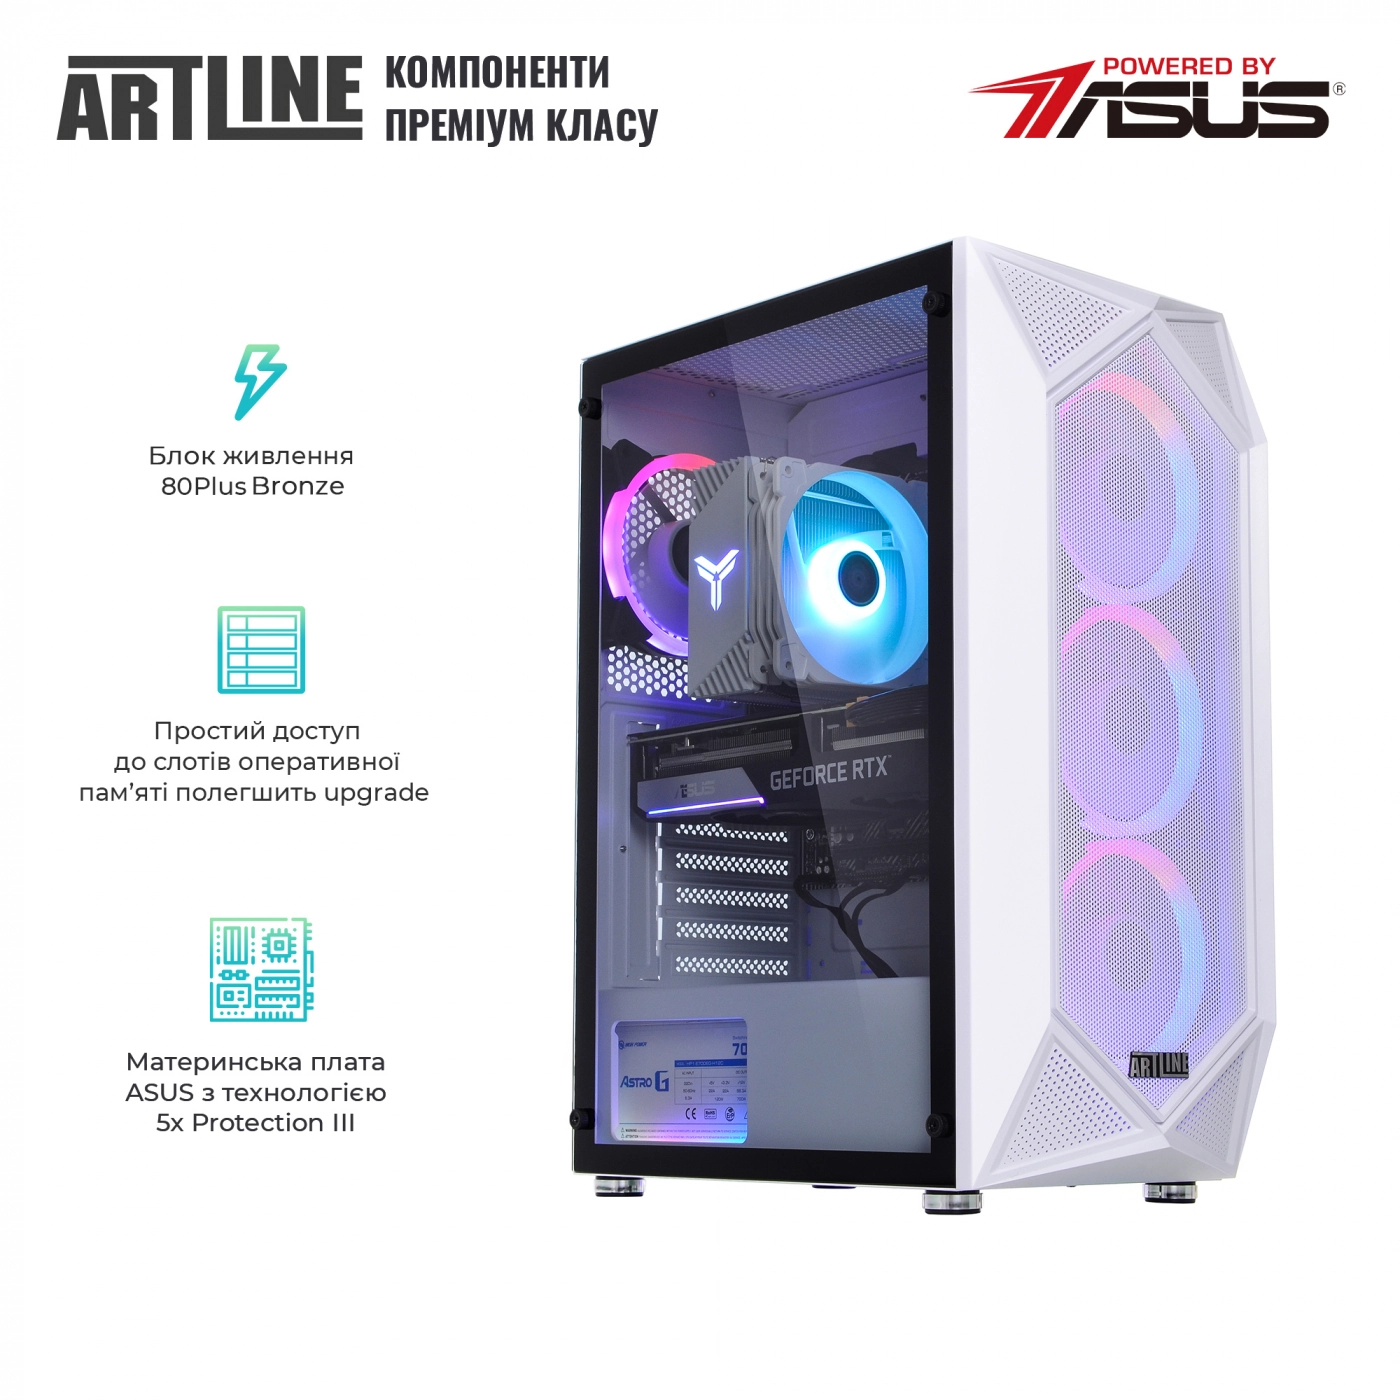 Купить Компьютер ARTLINE Gaming X75White (X75Whitev41Win) - фото 4